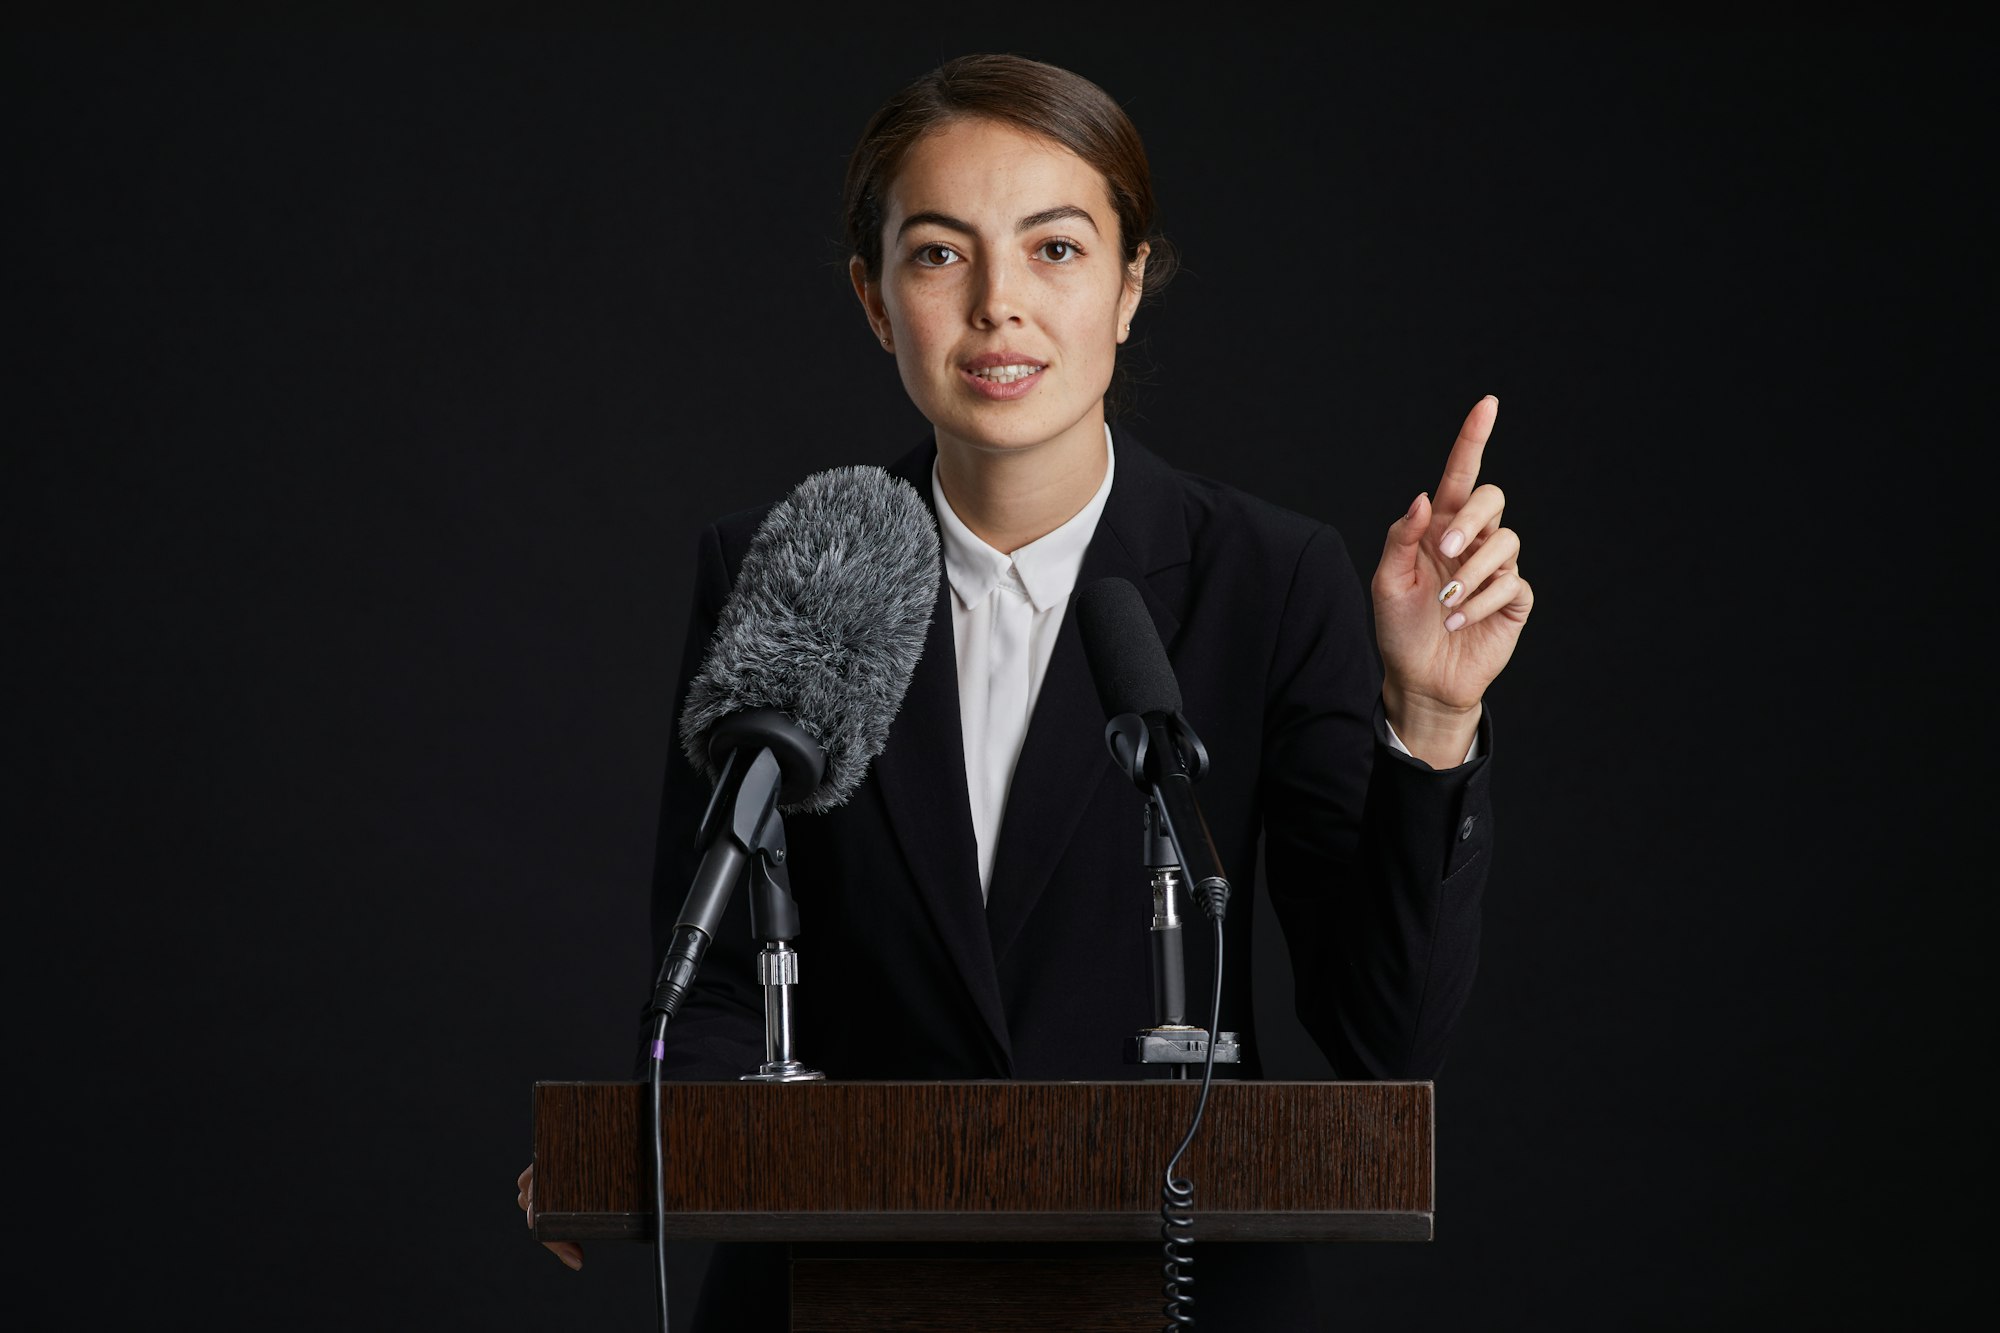 Prezydent miasta przemawia, stoi na trybunie wskazując palcem lewej ręki